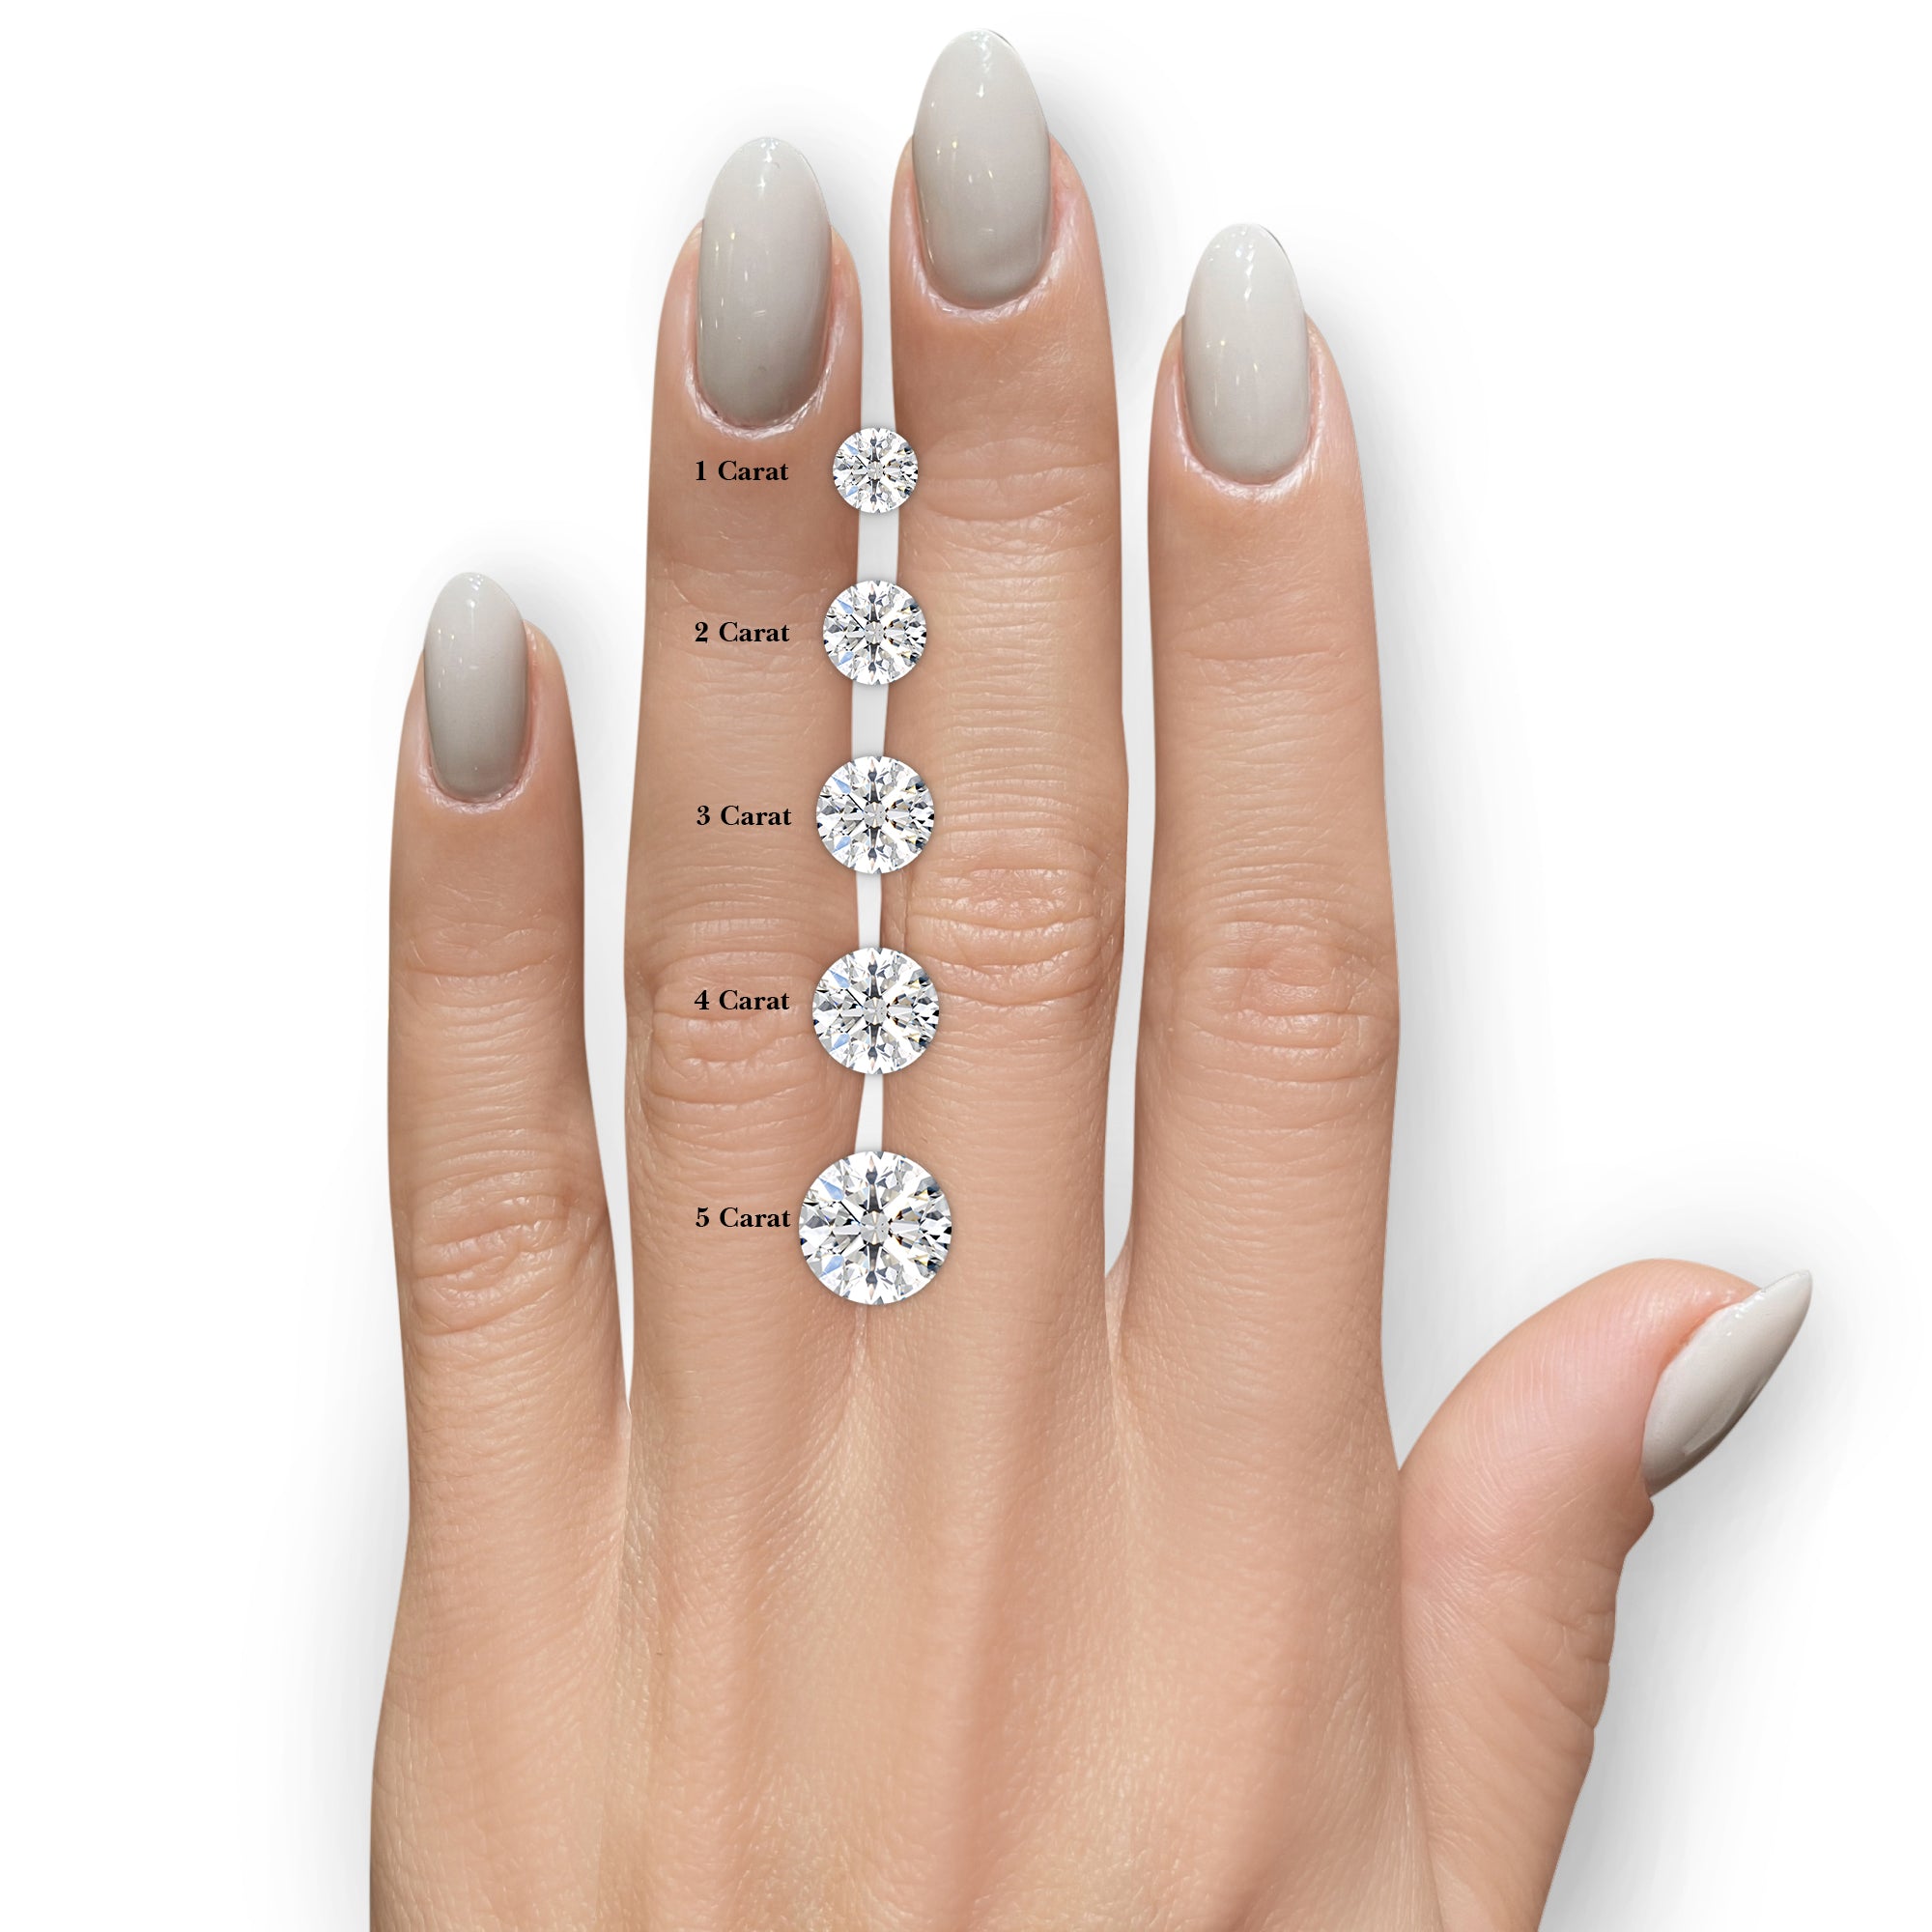 Michaela Diamond Engagement Ring -14K White Gold